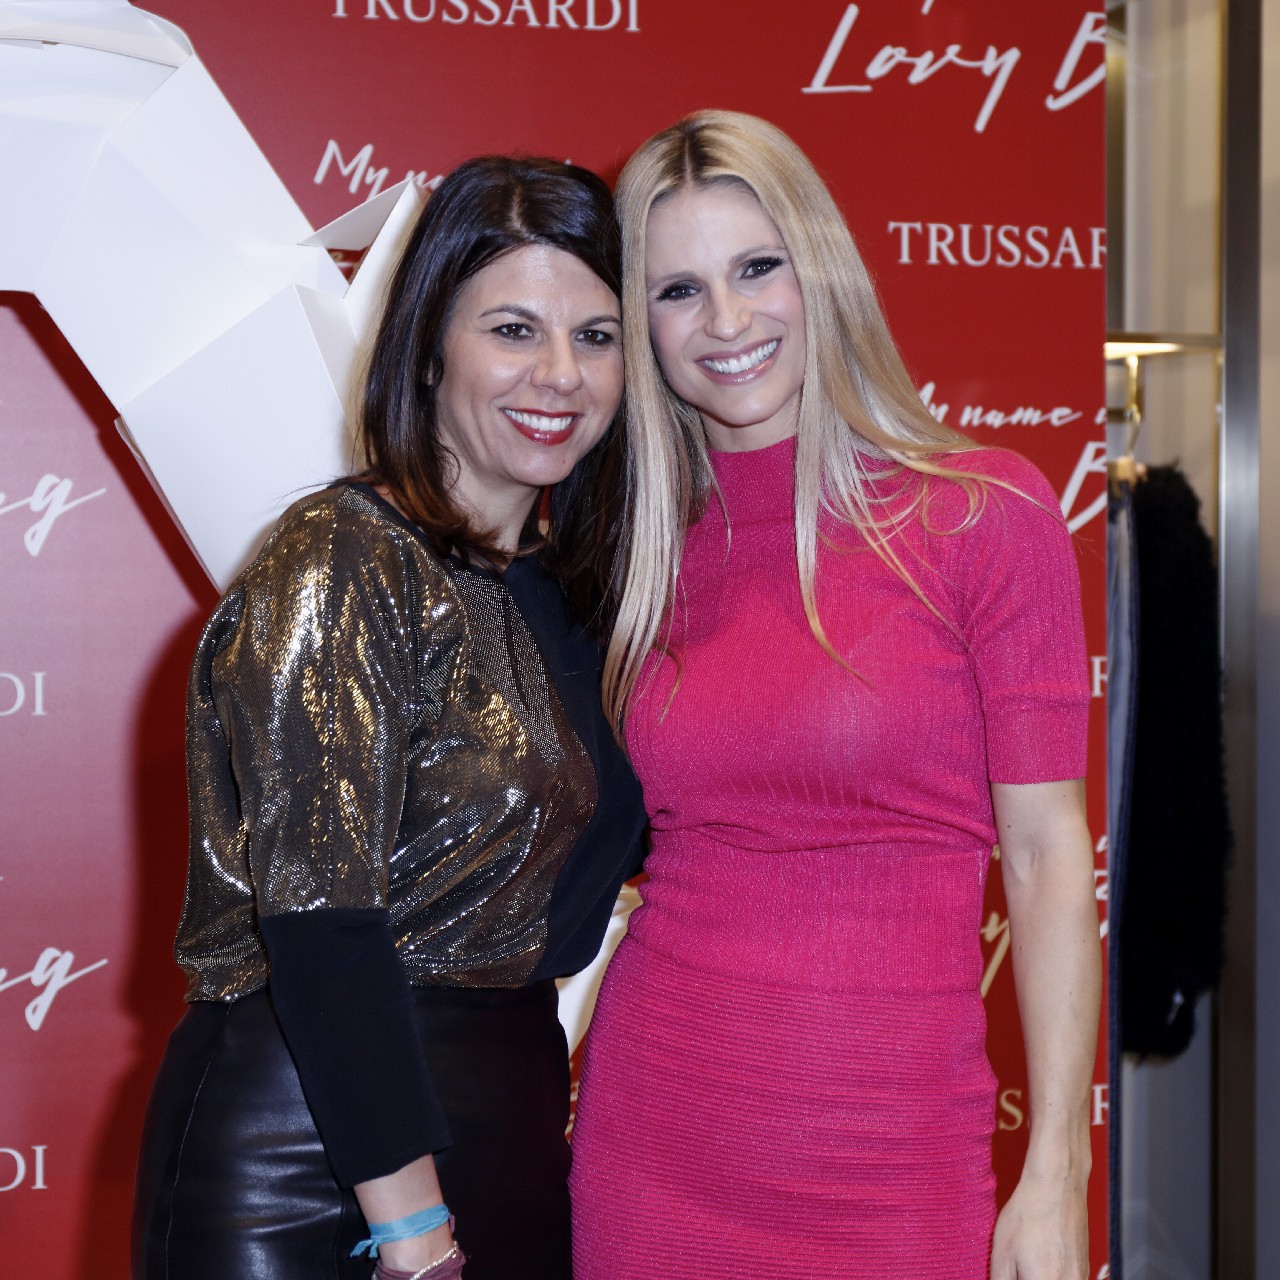 Trussardi LOVY Bag: il party a Milano con protagonista Michelle Hunziker